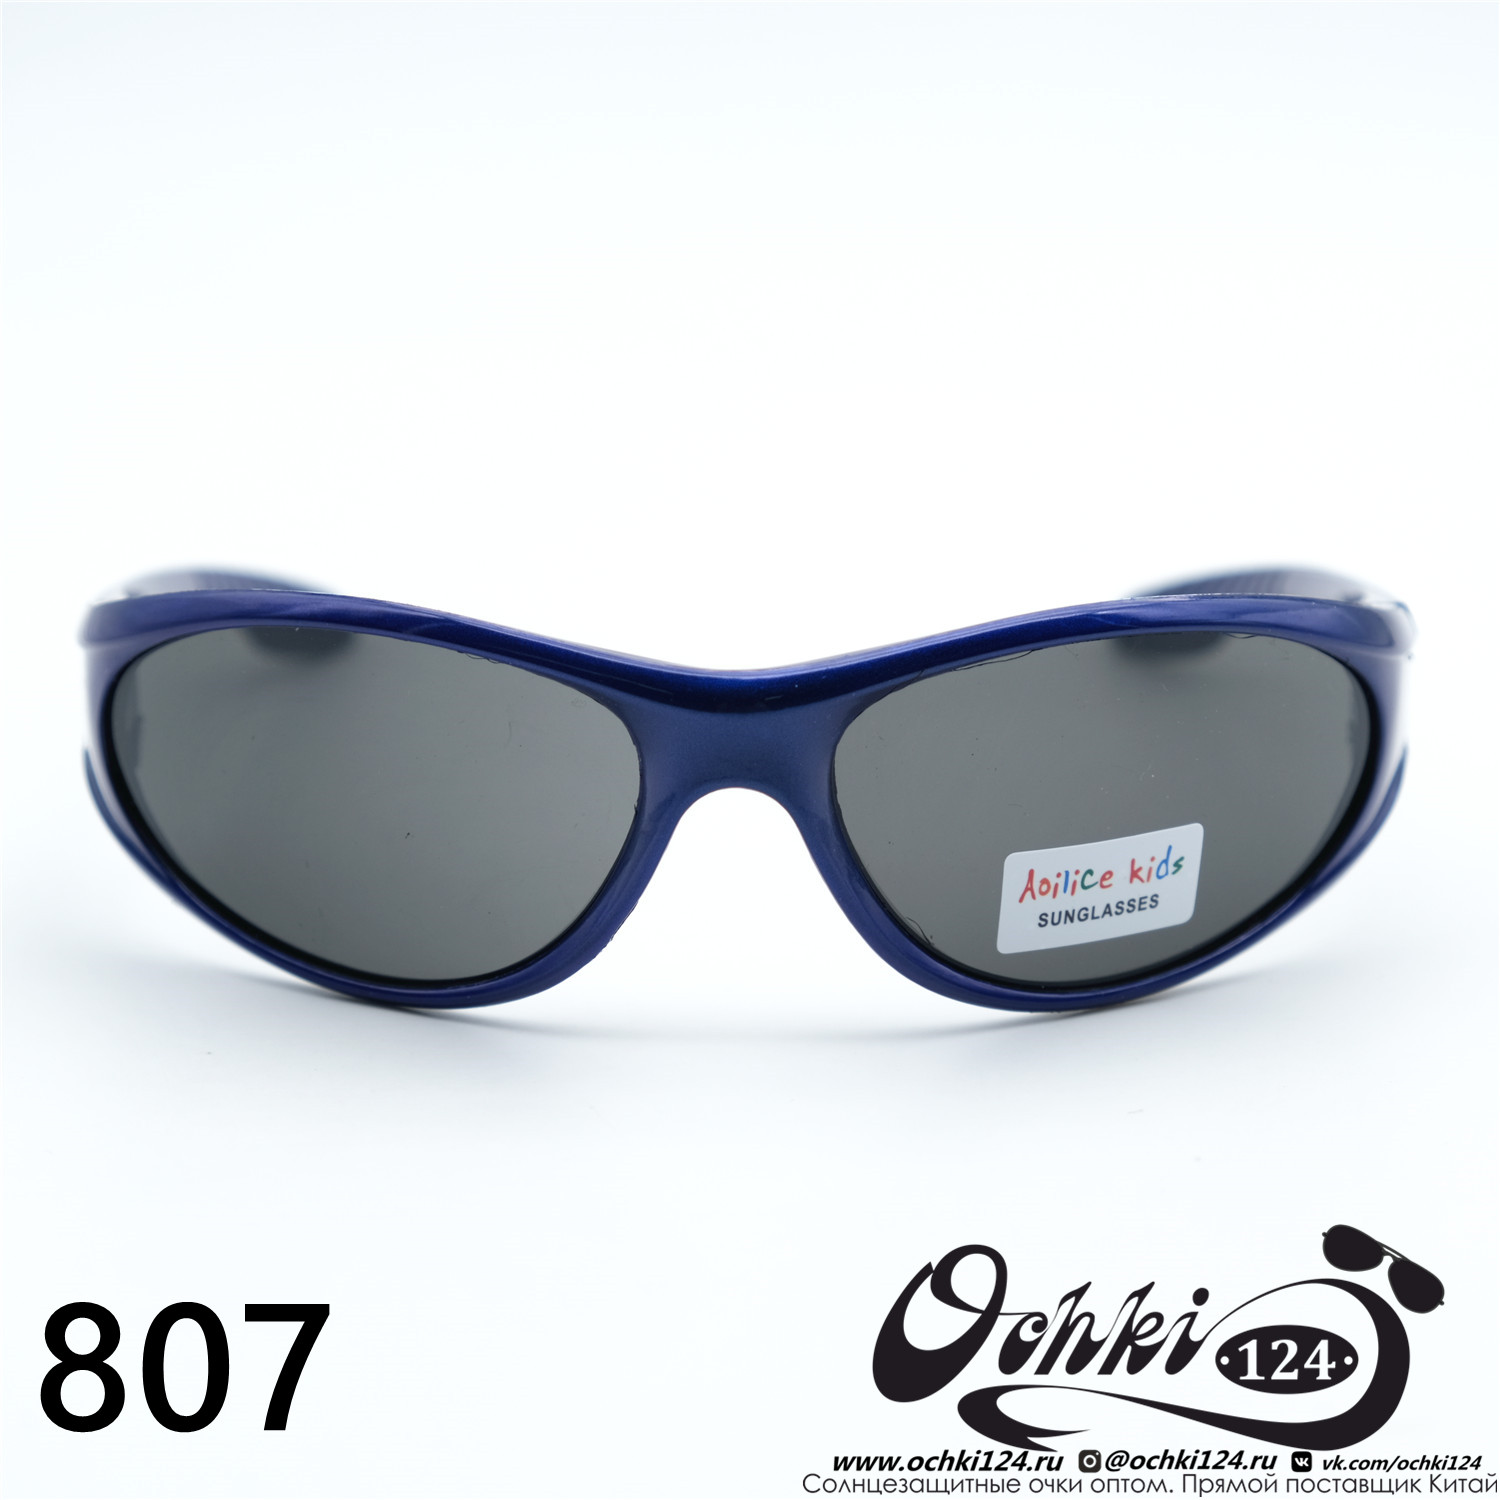  Солнцезащитные очки картинка 2023 Детские Узкие и длинные  807-C6 